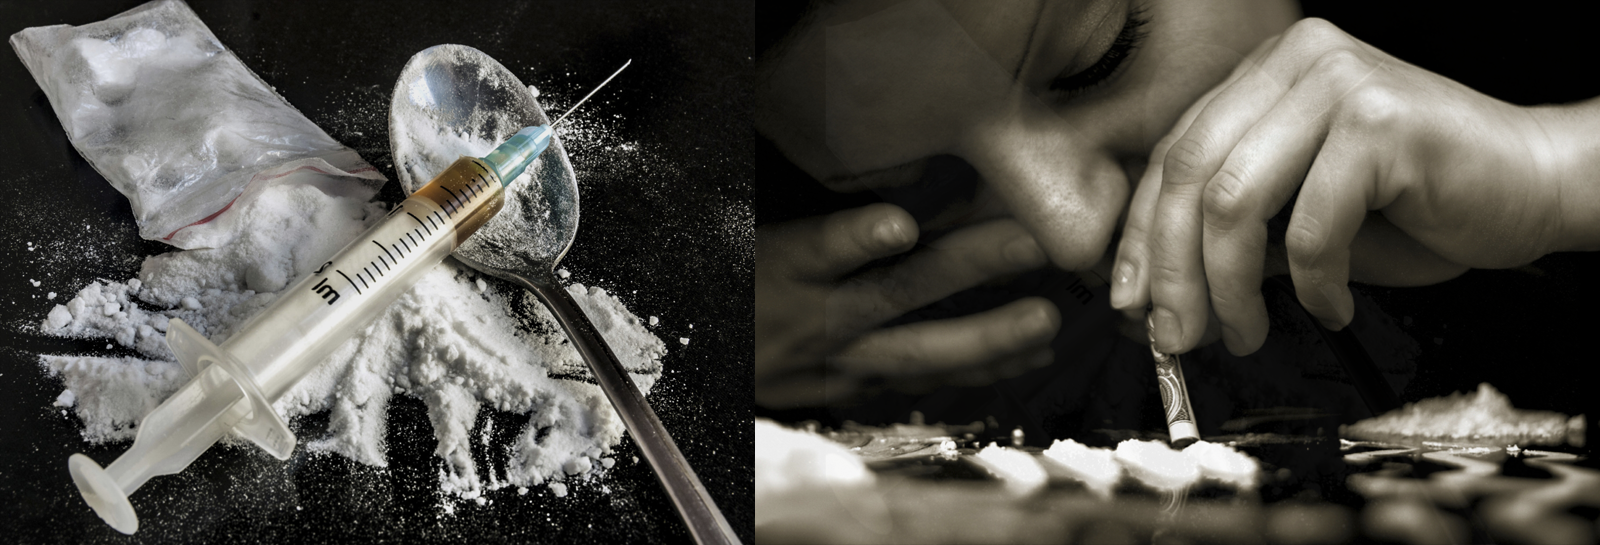 Acheter de la cocaine – acheter cocaine